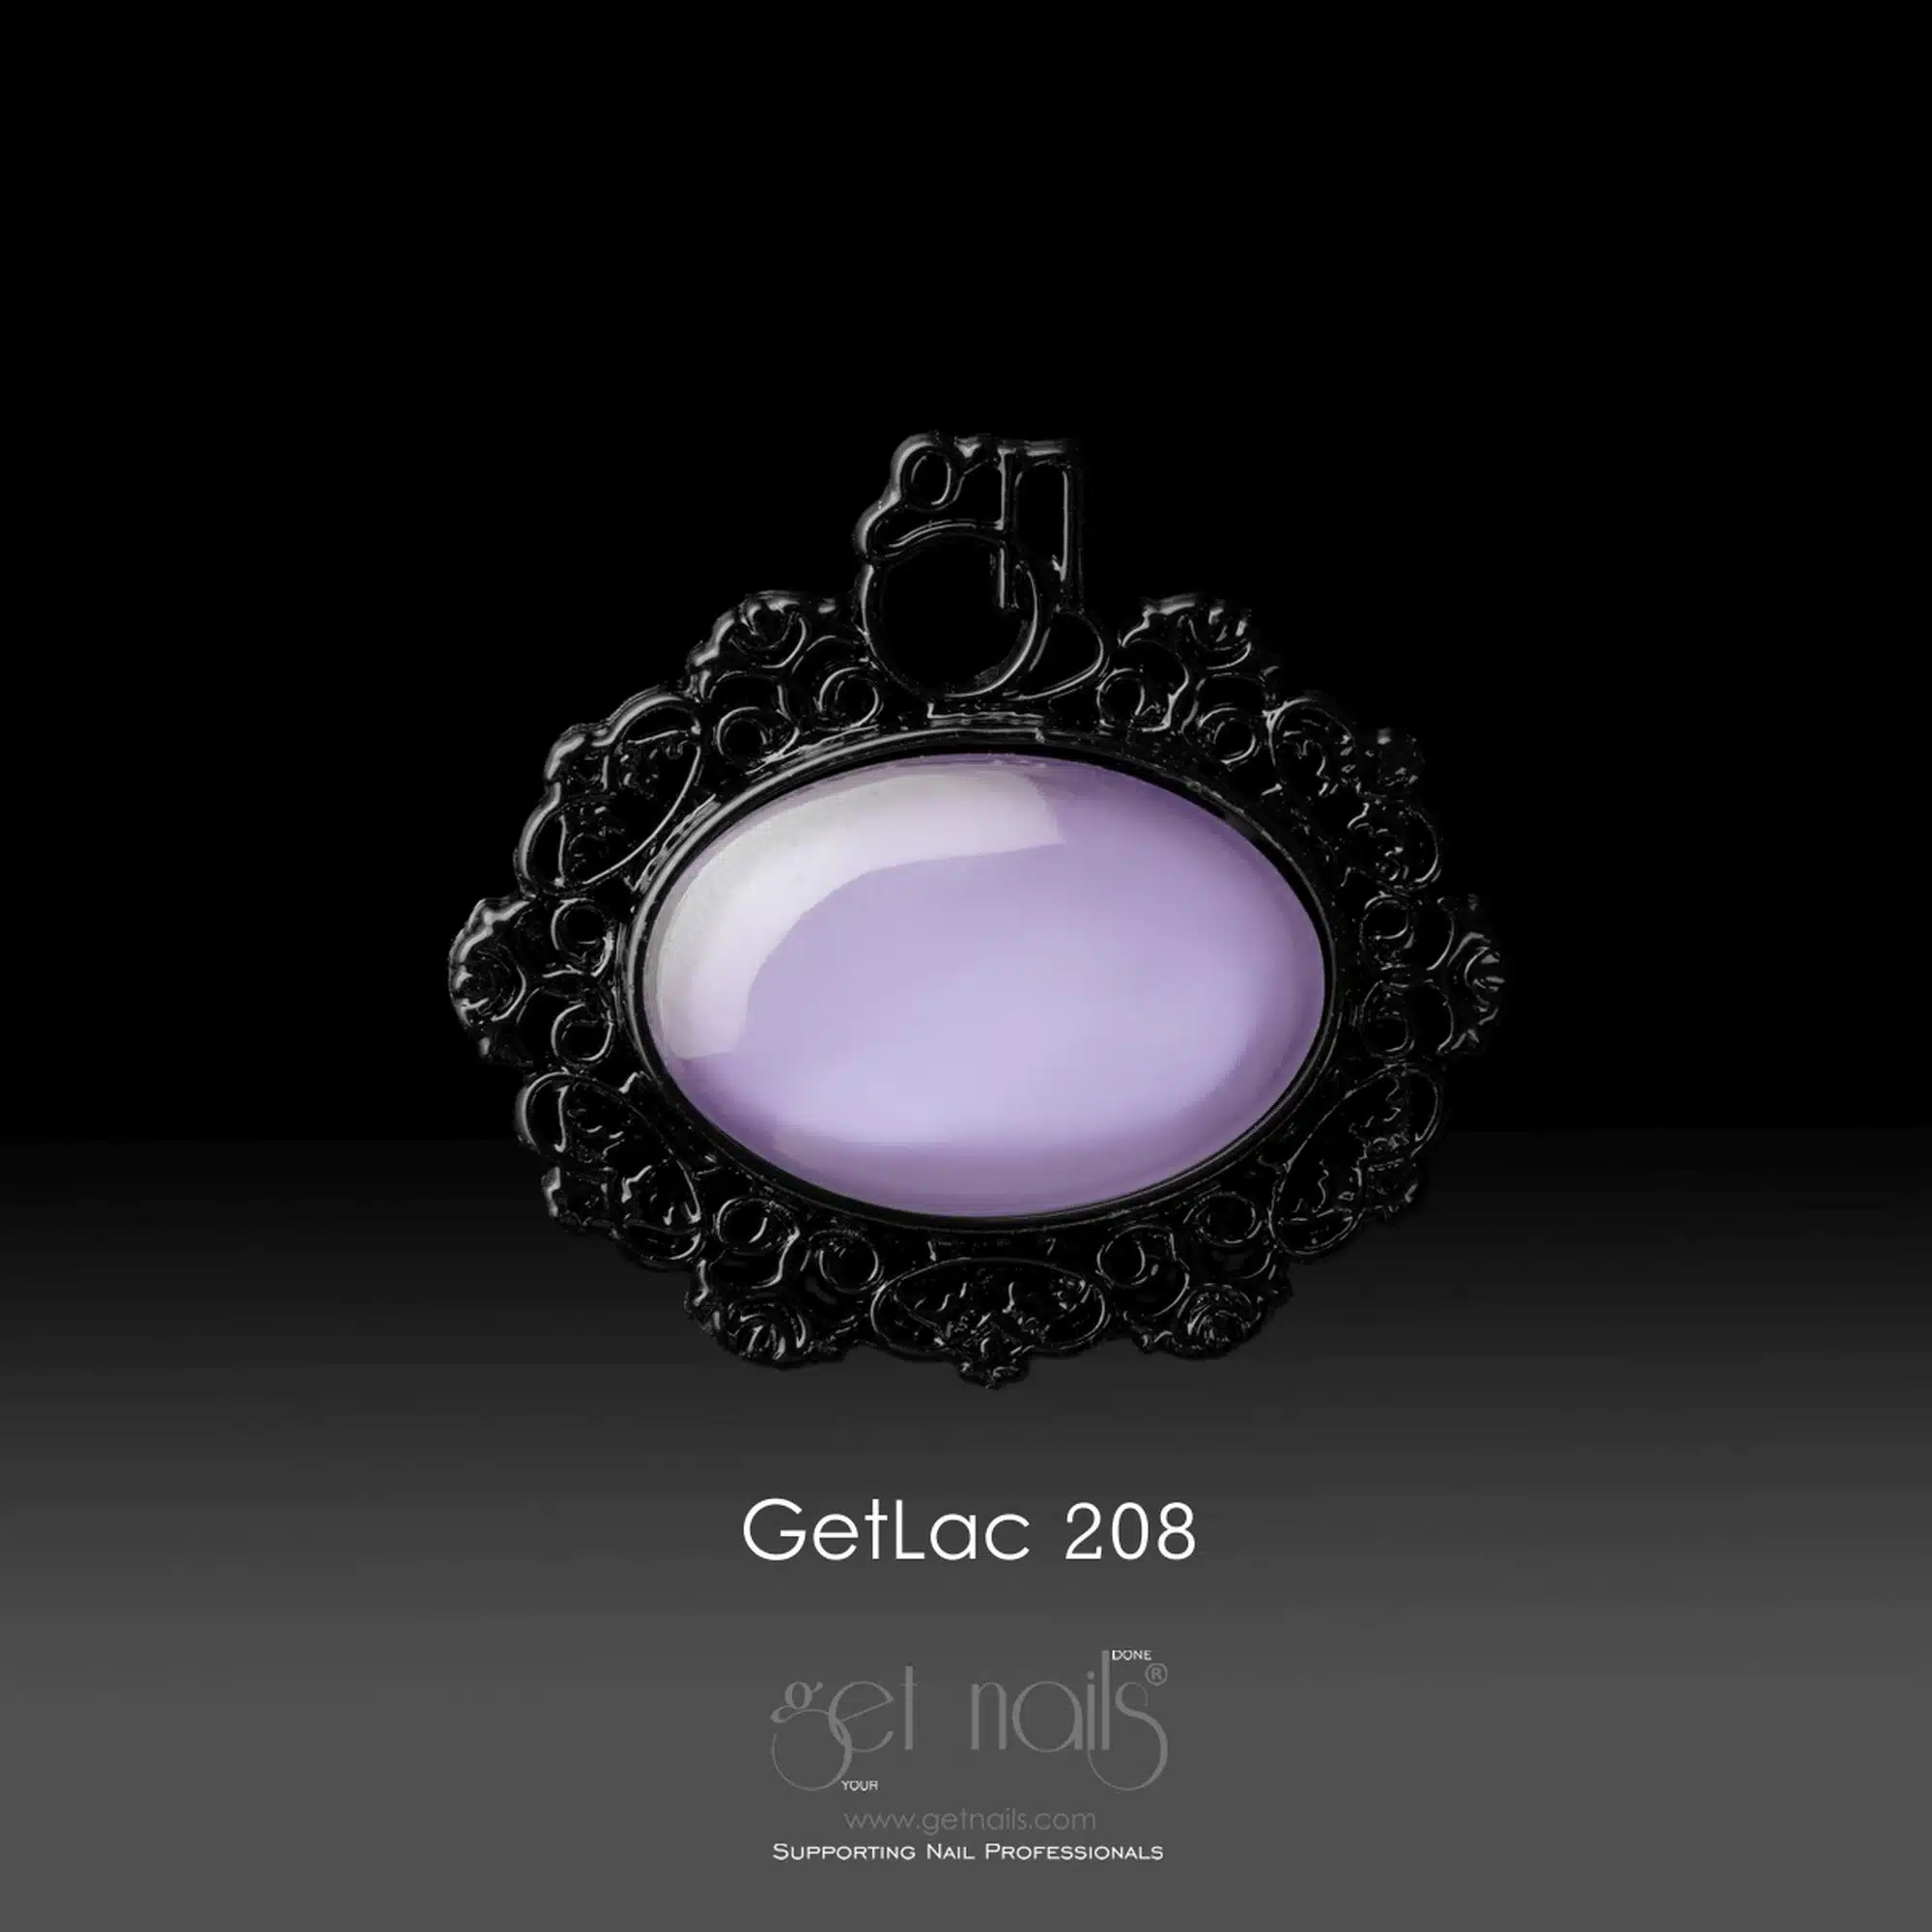 Get Nails Austria - GetLac 208 Лавандовое миндальное печенье 15г